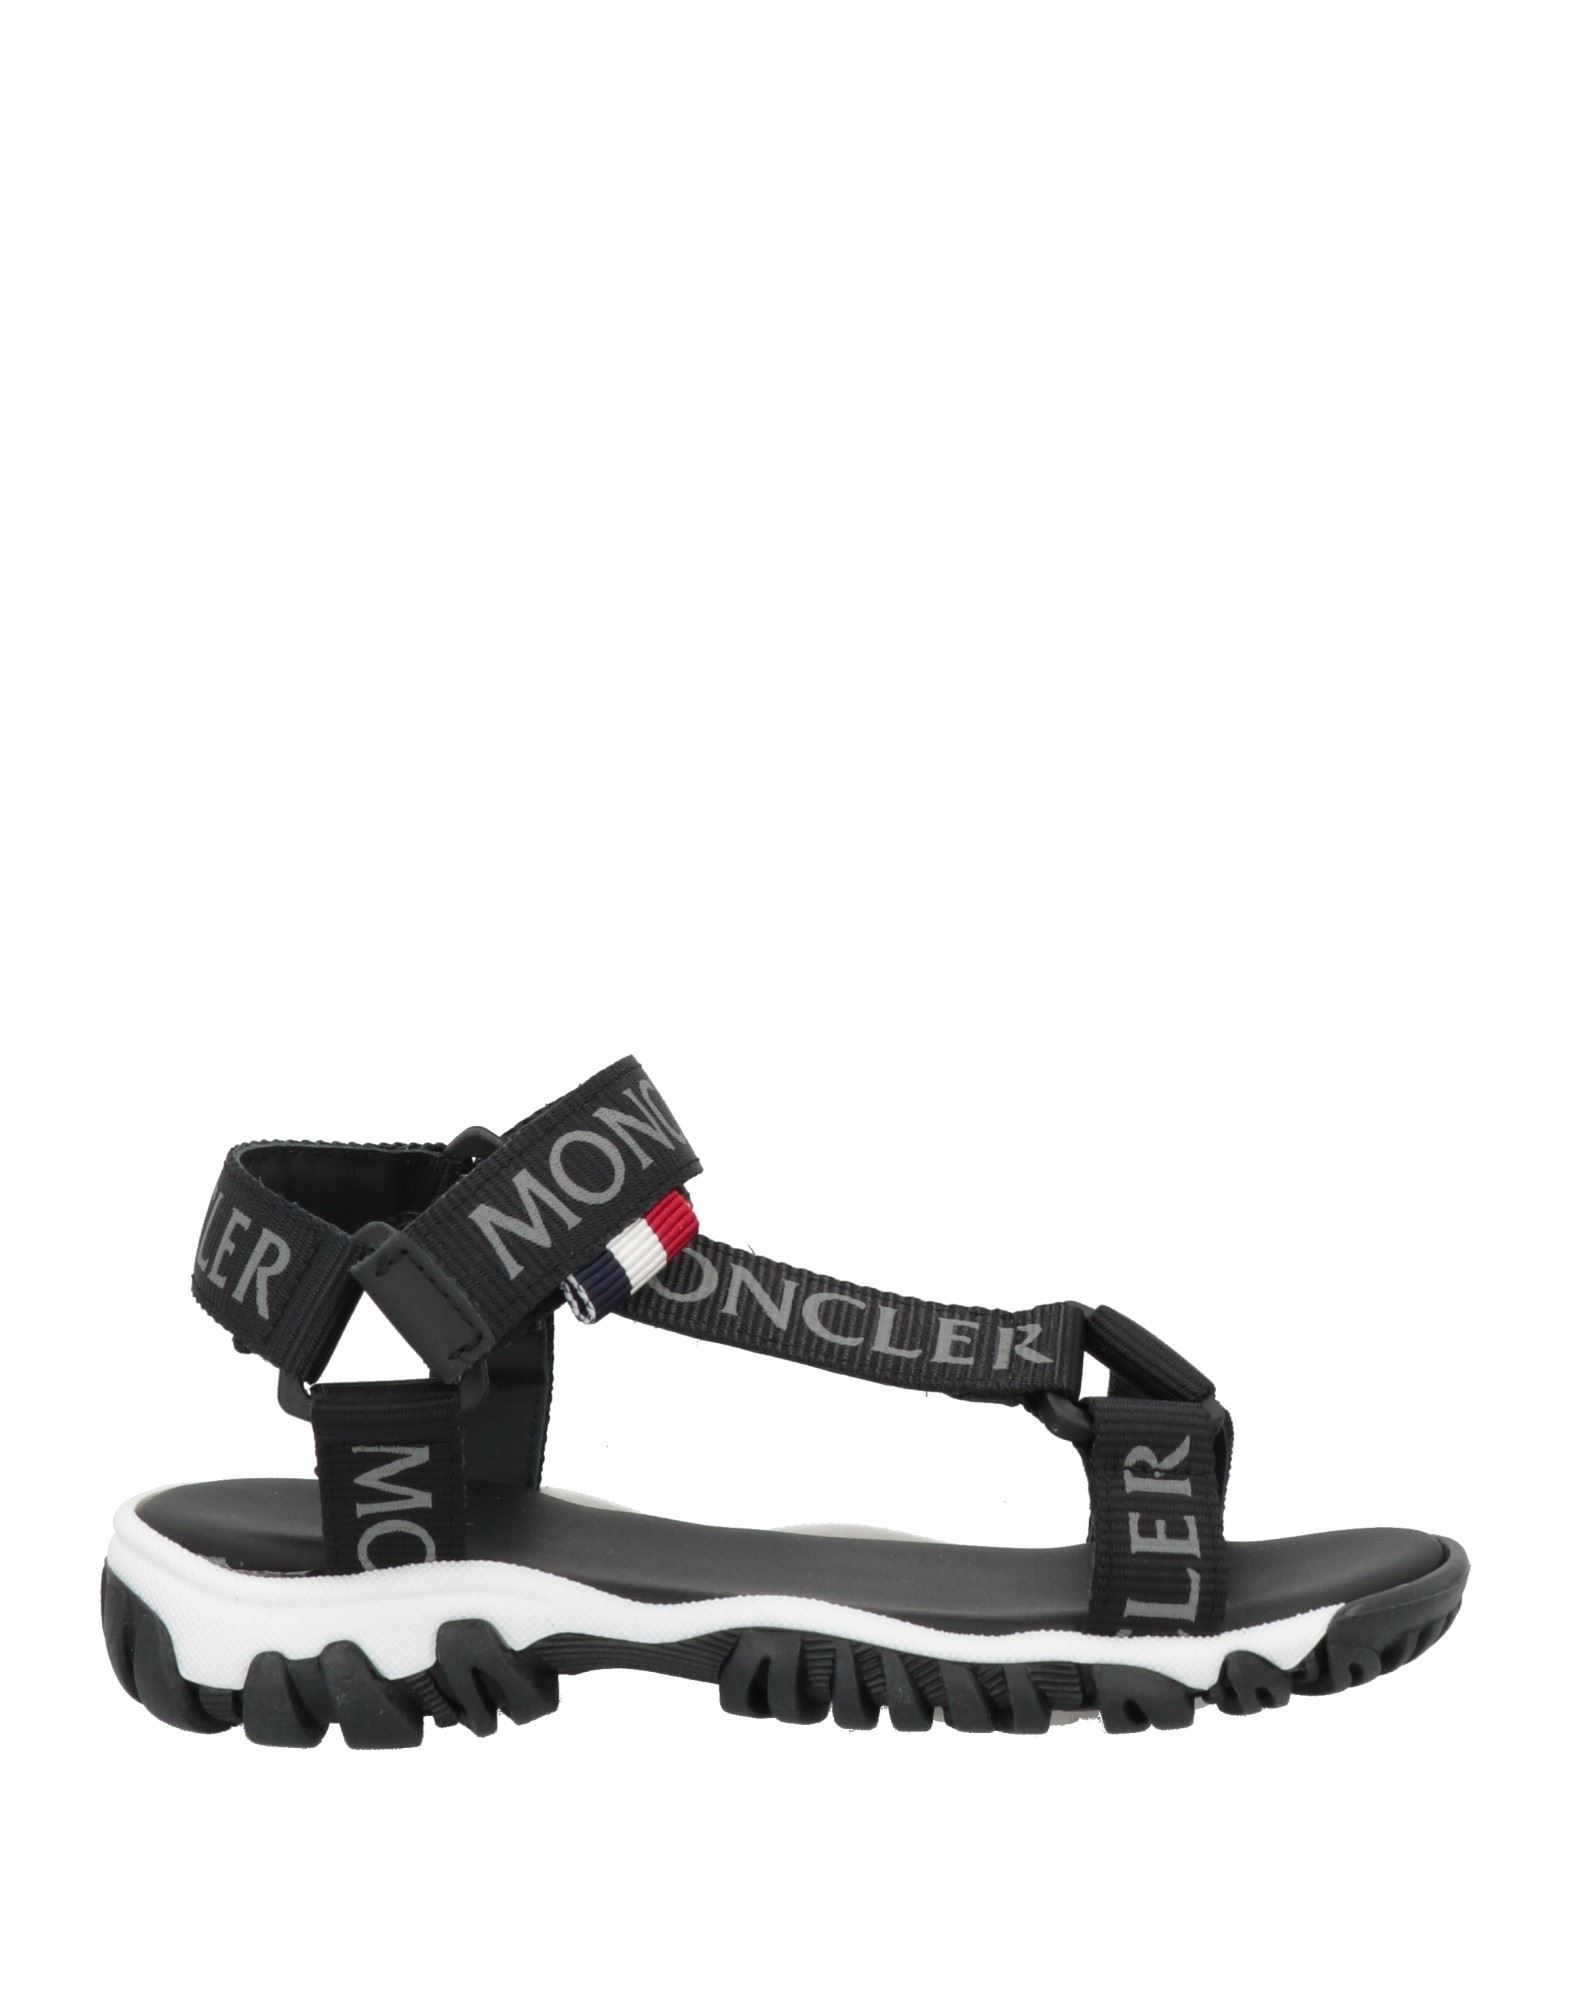 Shop Moncler Toddler Boy Sandals Black Size 9.5c Textile Fibers